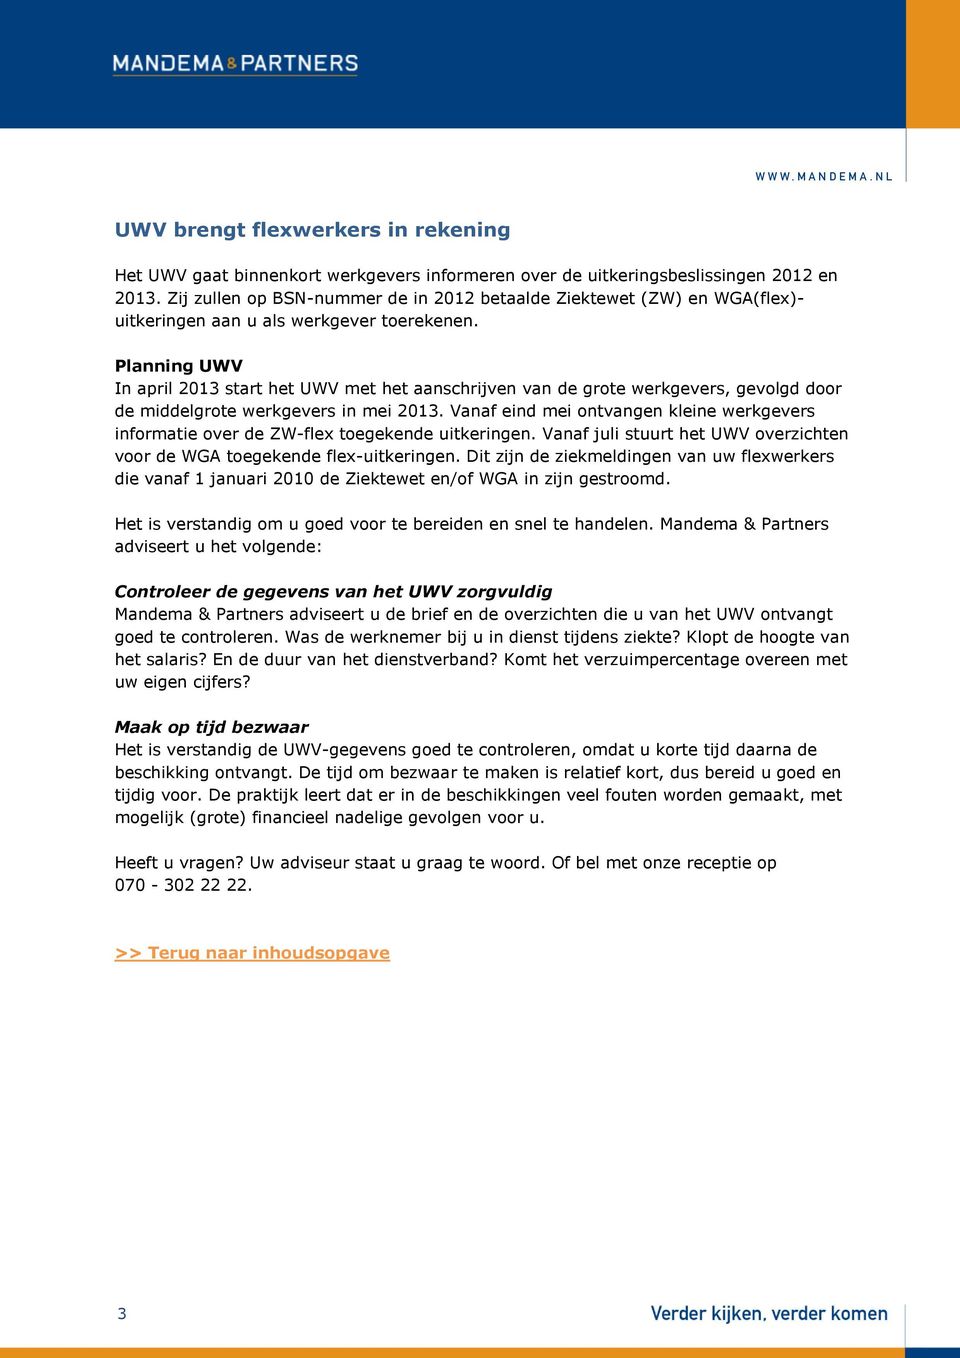 Planning UWV In april 2013 start het UWV met het aanschrijven van de grote werkgevers, gevolgd door de middelgrote werkgevers in mei 2013.